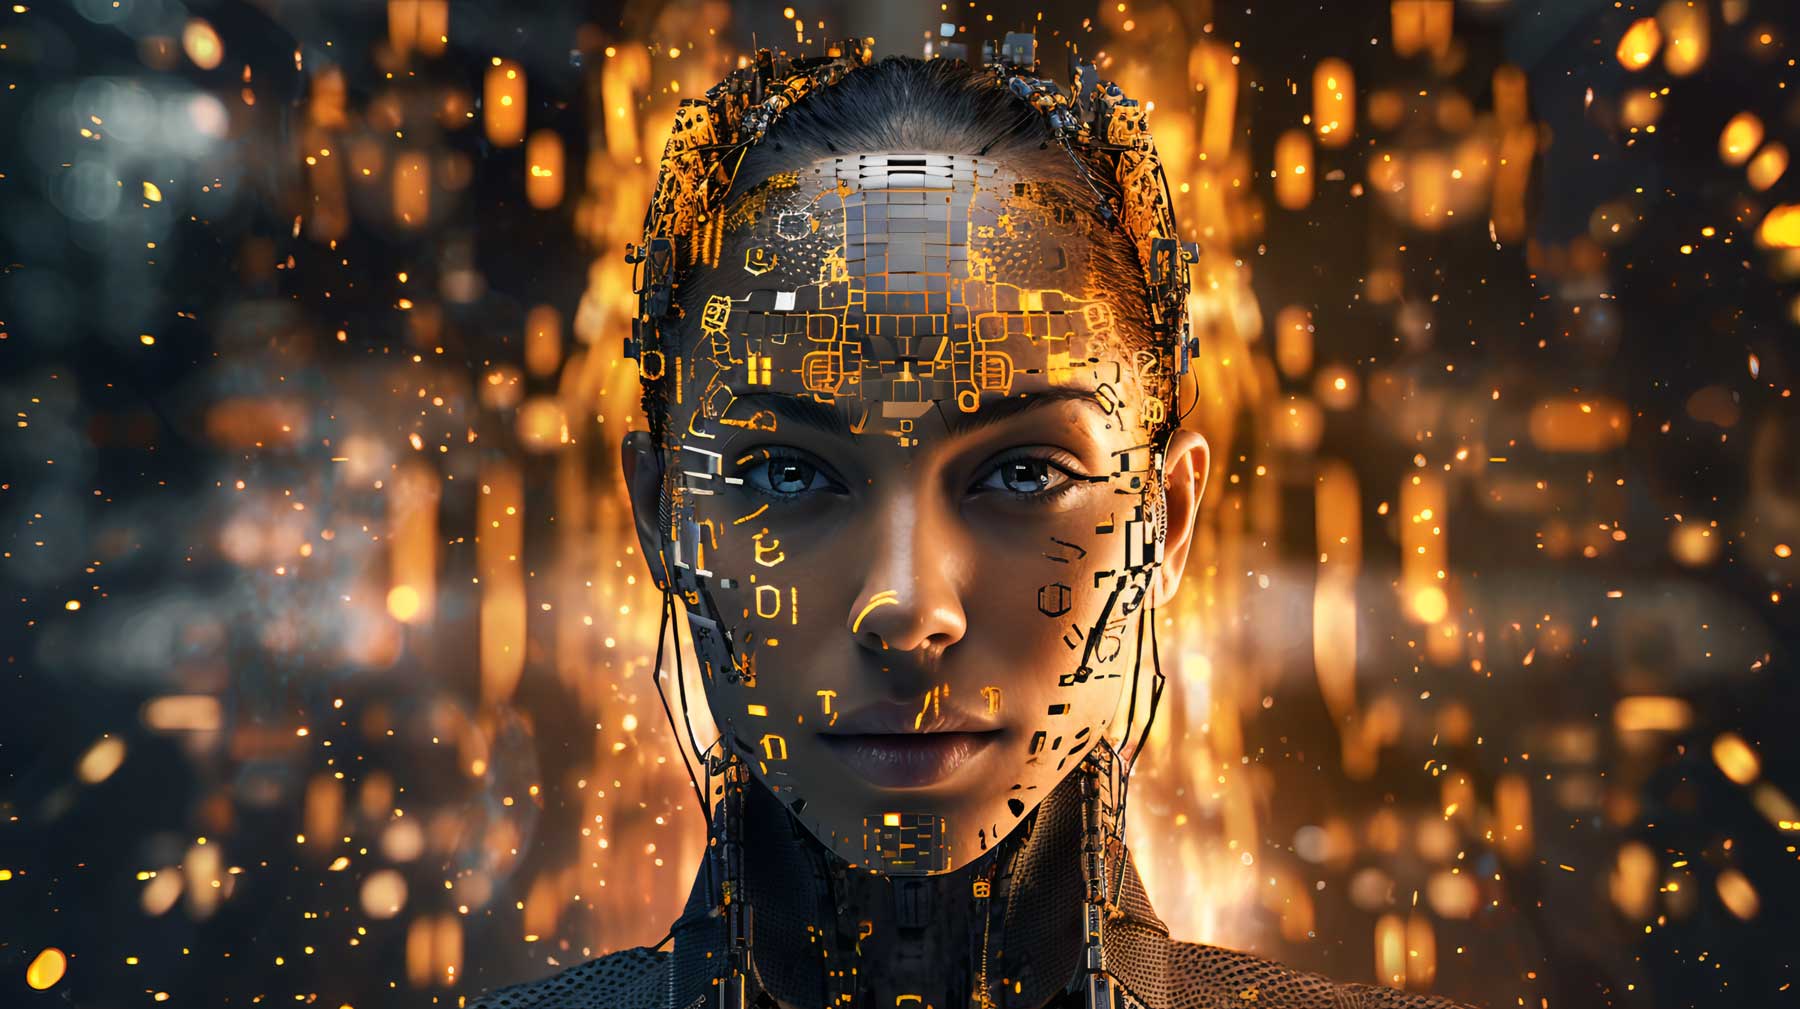 这是一张展示半人脸半机械脸的图像，充满科技感，背景是模糊的橙色光点，给人一种未来世界的感觉。